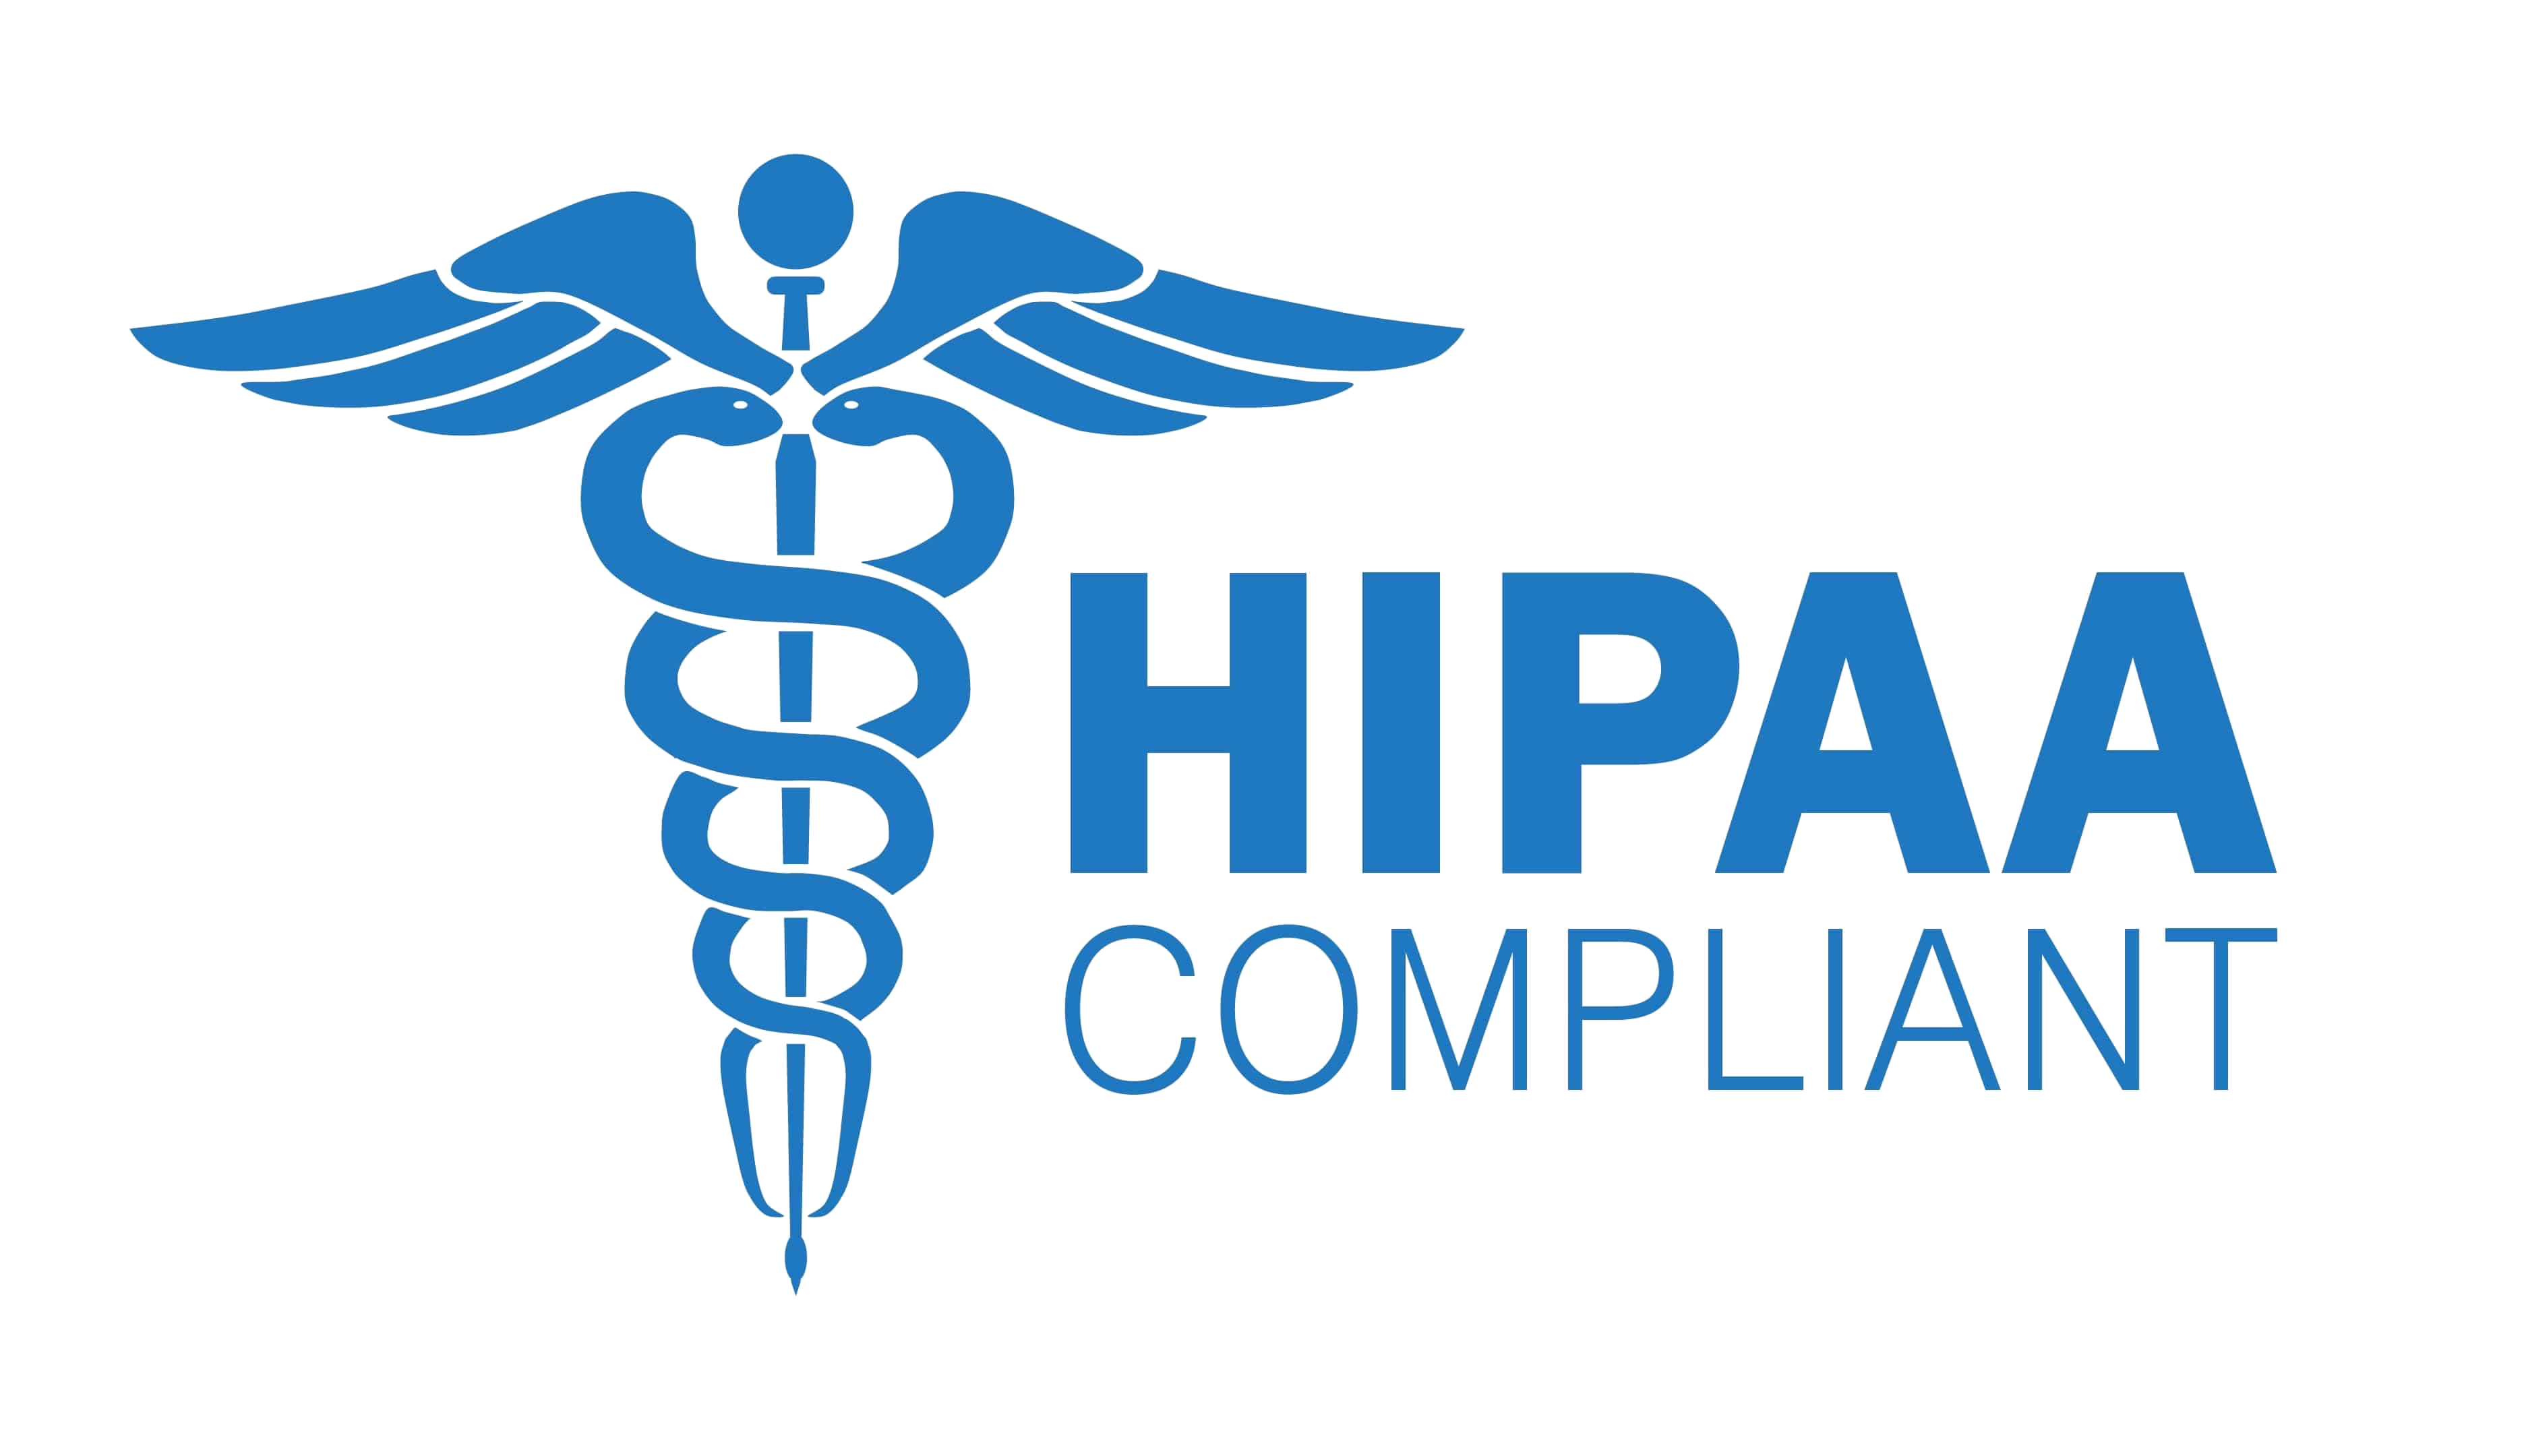 HIPAA compliant digital asset management